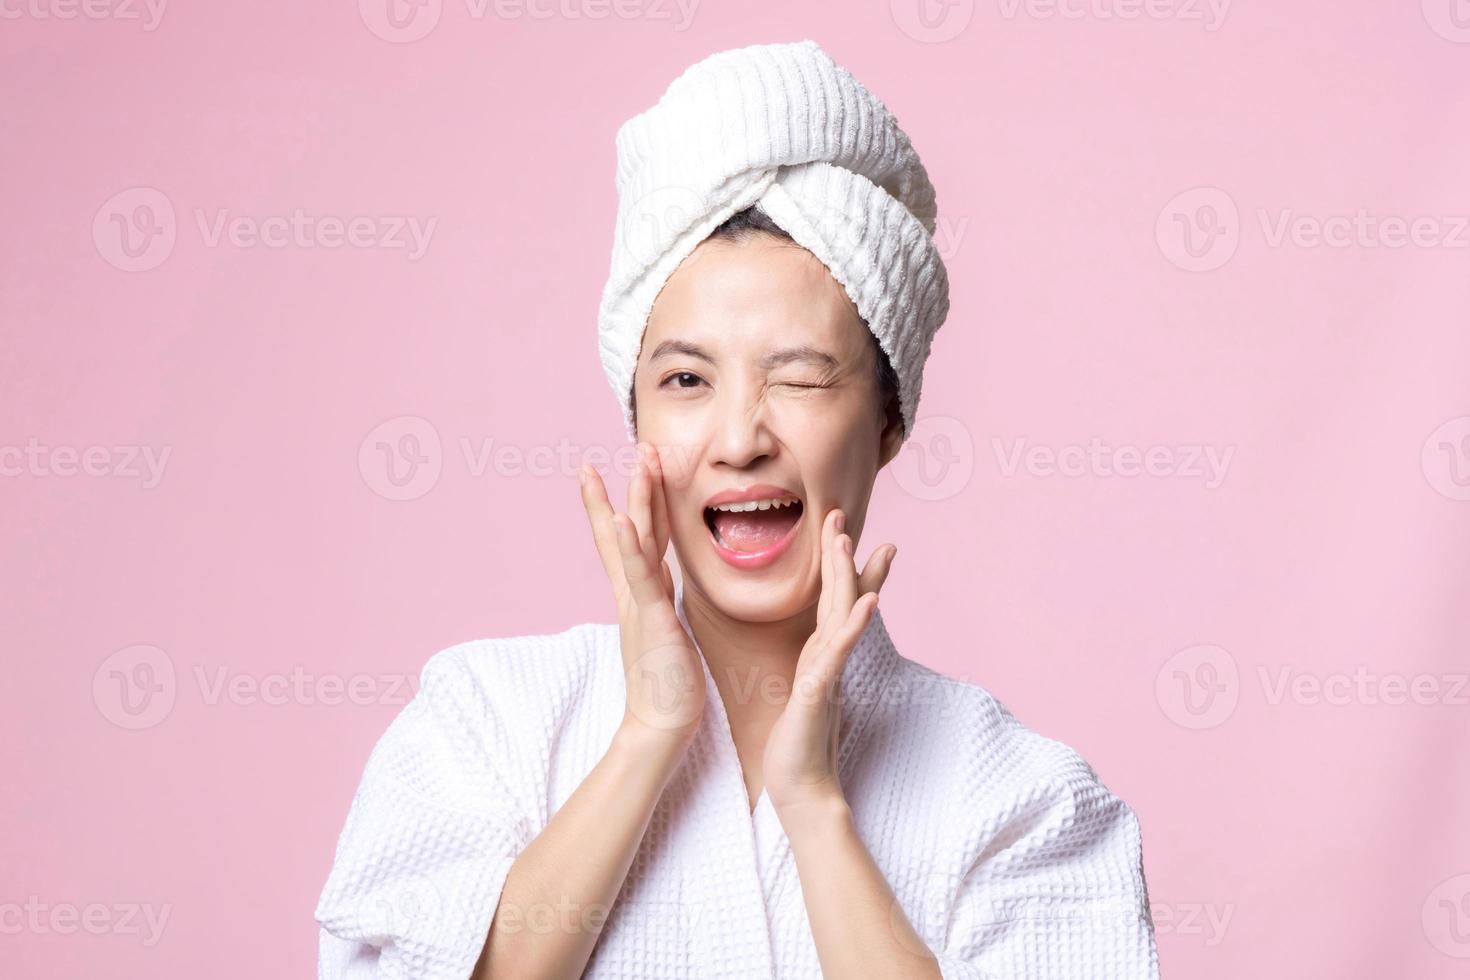 magnifique Jeune asiatique femme content avec nettoyer visage peau dans serviette et peignoir de bain, spa costume sur rose Contexte. soins de la peau, traitement, bien-être thérapie, faciale se soucier, beauté femelle santé, cosmétologie concept photo